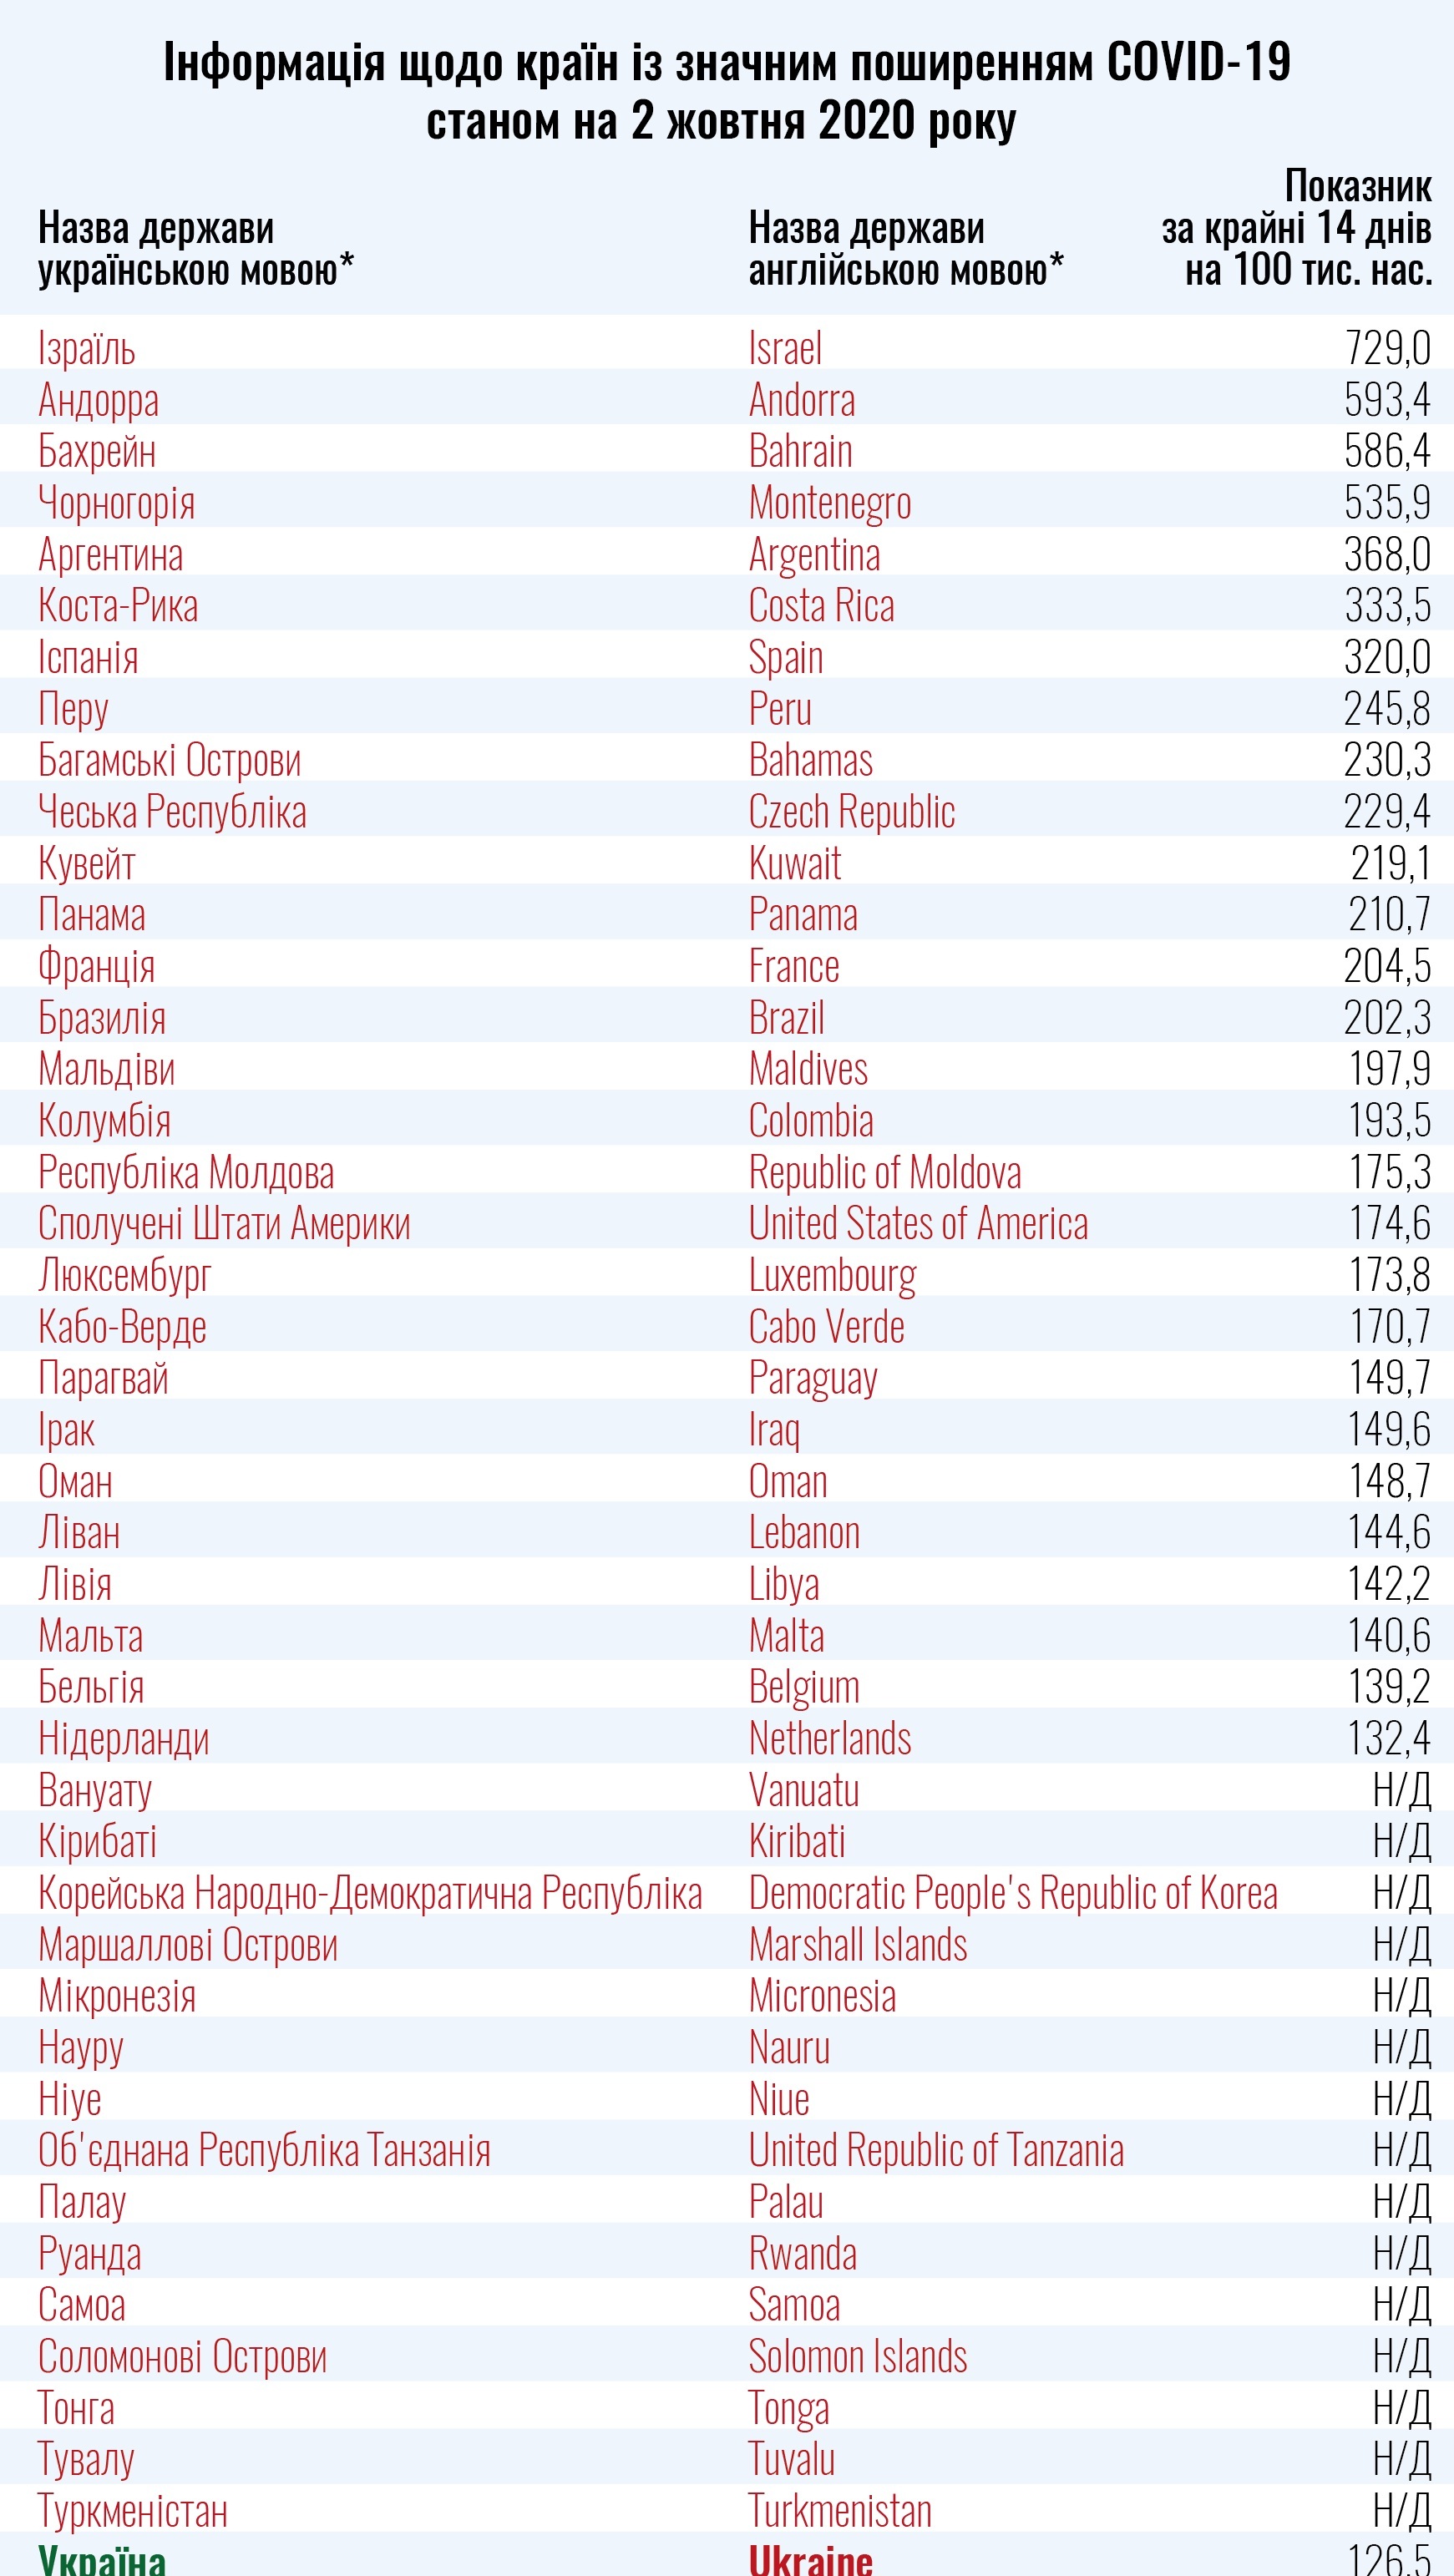 Минздрав обновил список красных стран. Скриншот с сайта МОЗ